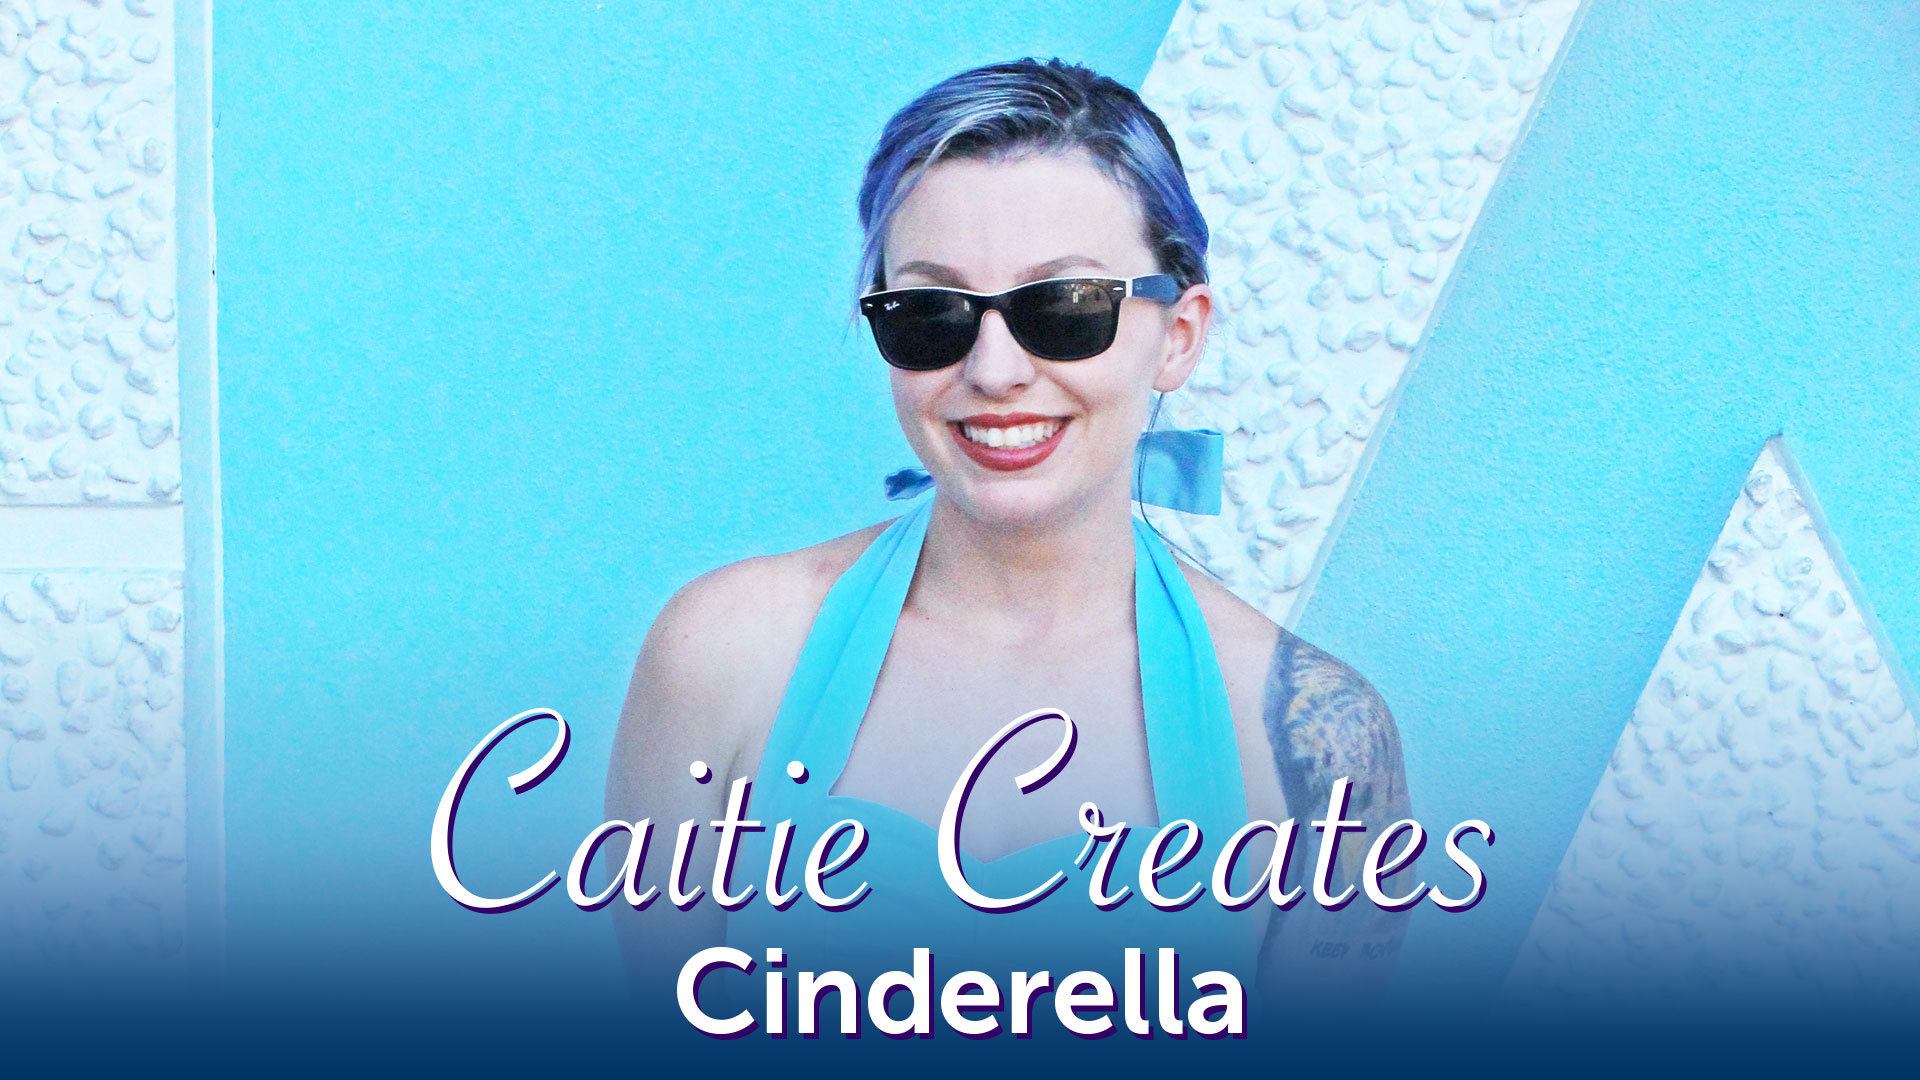 Cinderella Disneybound – Caitie Creates